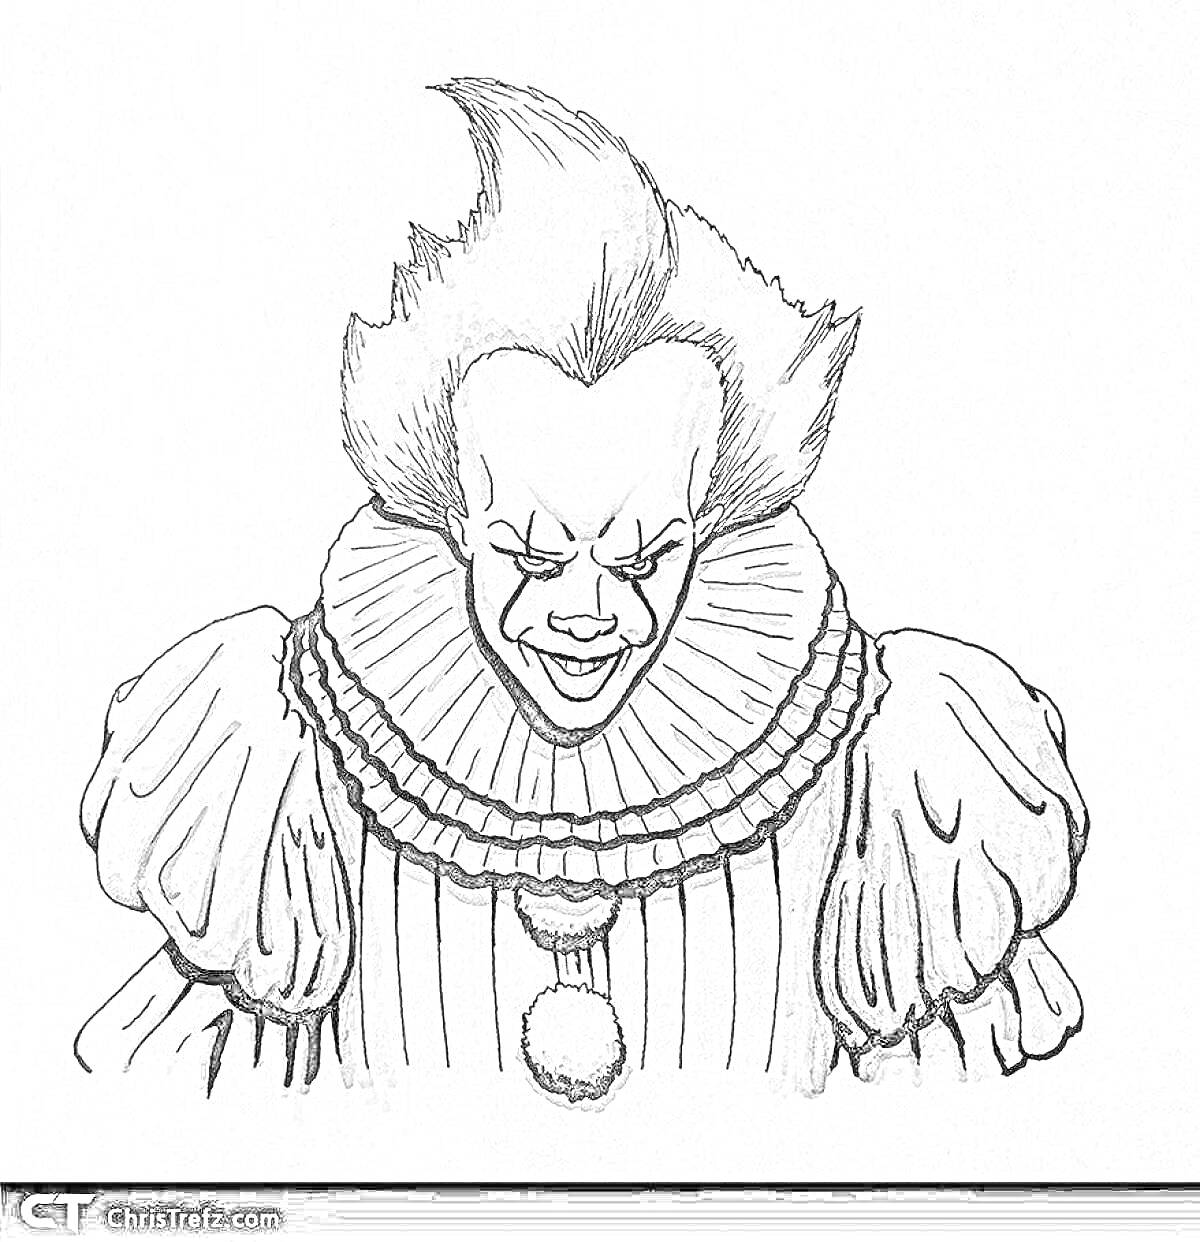 Пеннивайз с клоунским костюмом и характерным выражением лица